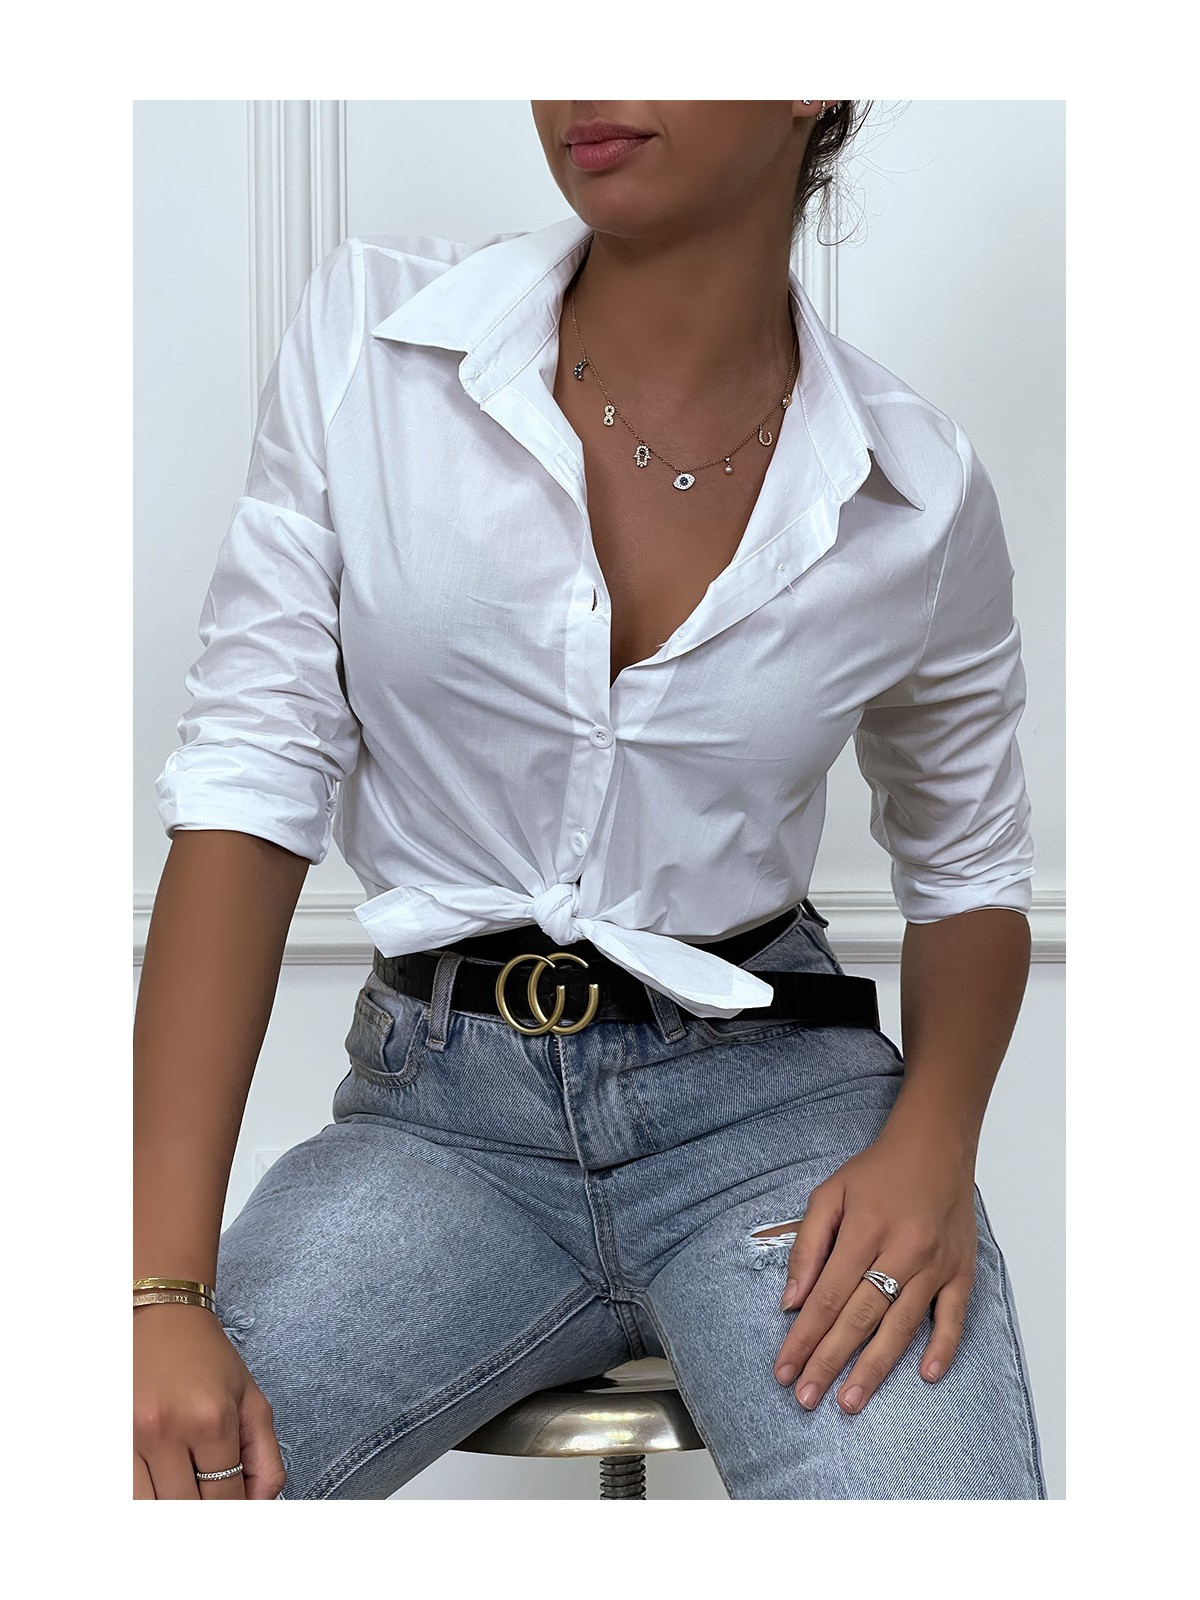 Chemise blanche cintré avec dessin au dos. Chemise femme - 3